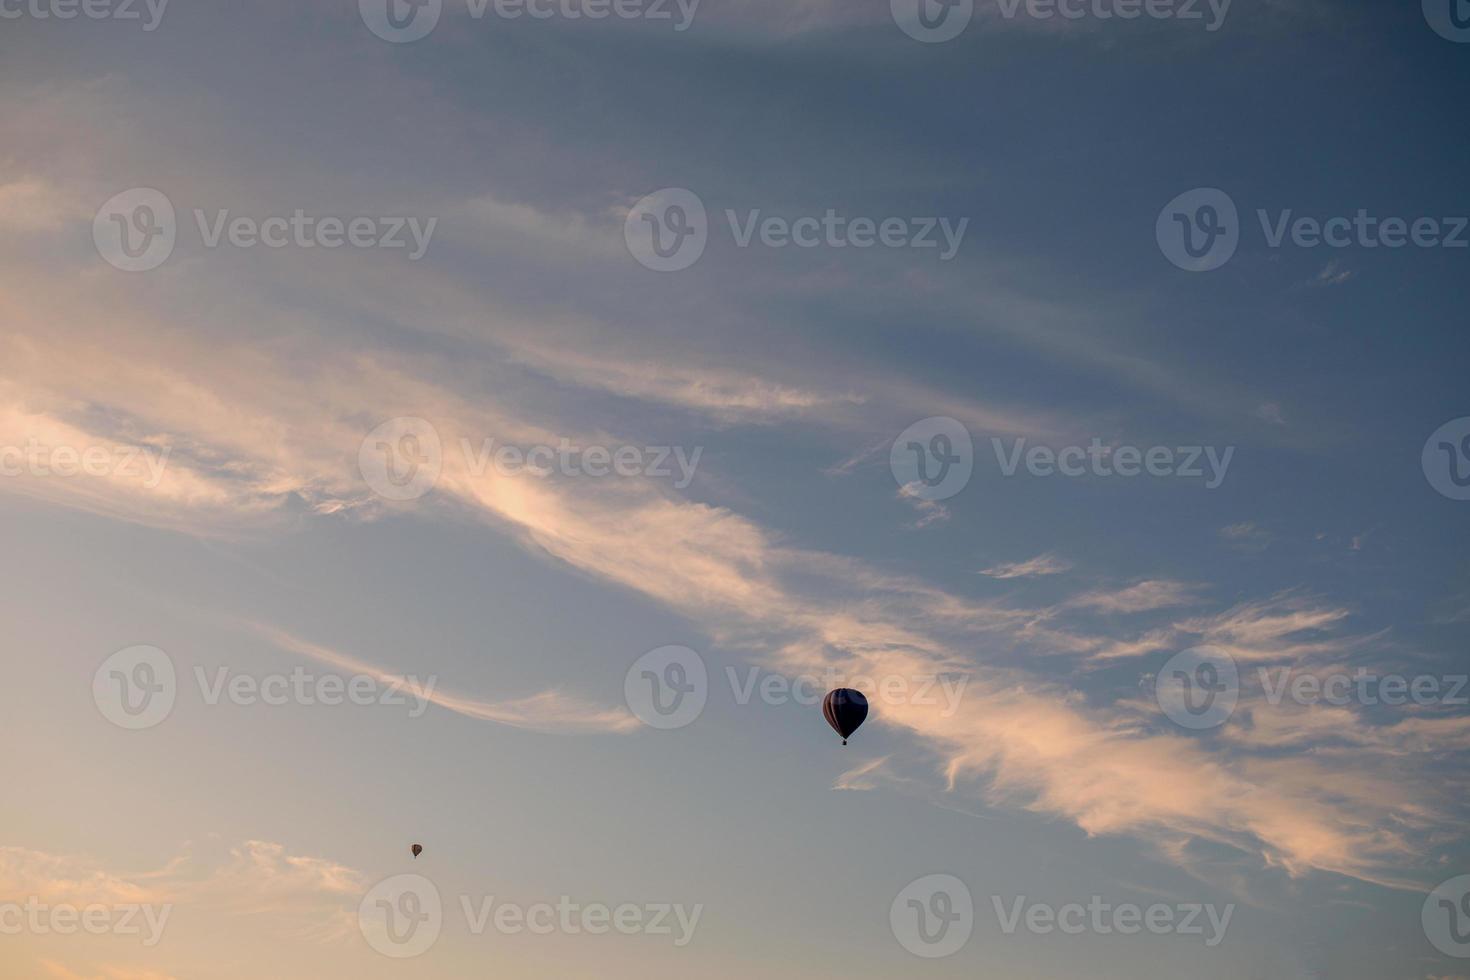 vuelo de dos globos en el cielo por la mañana al amanecer o por la tarde al atardecer. viajar en avion o aventura foto